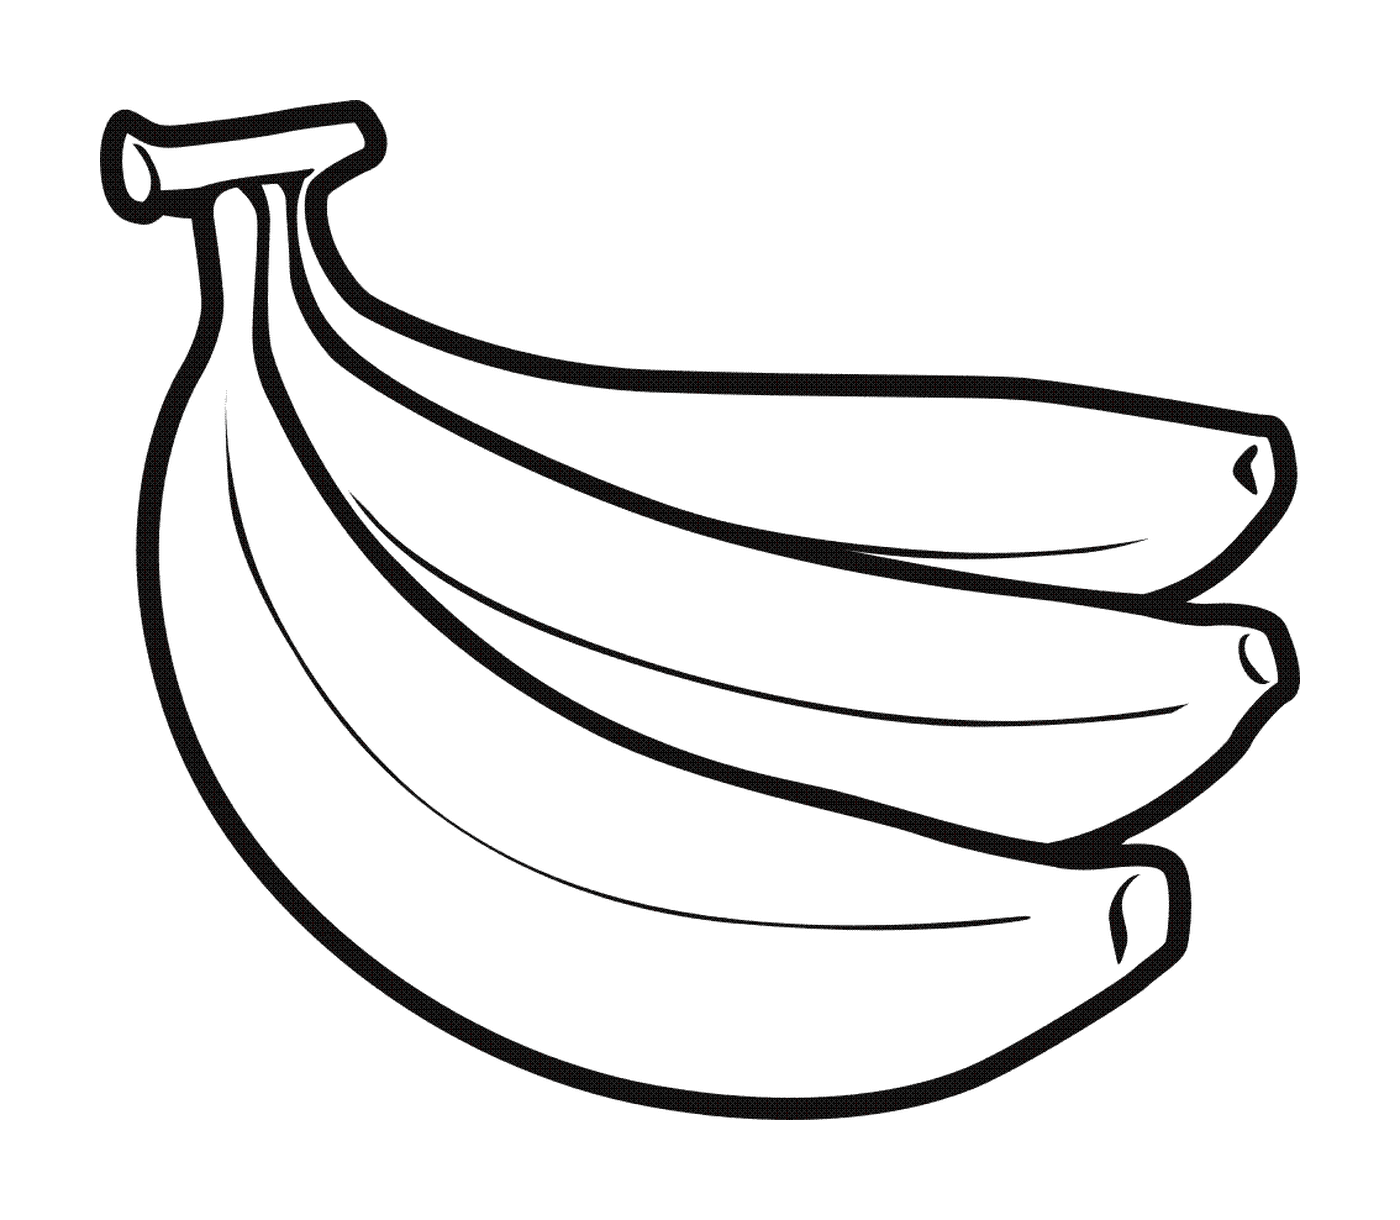  bananas maduras no chão 